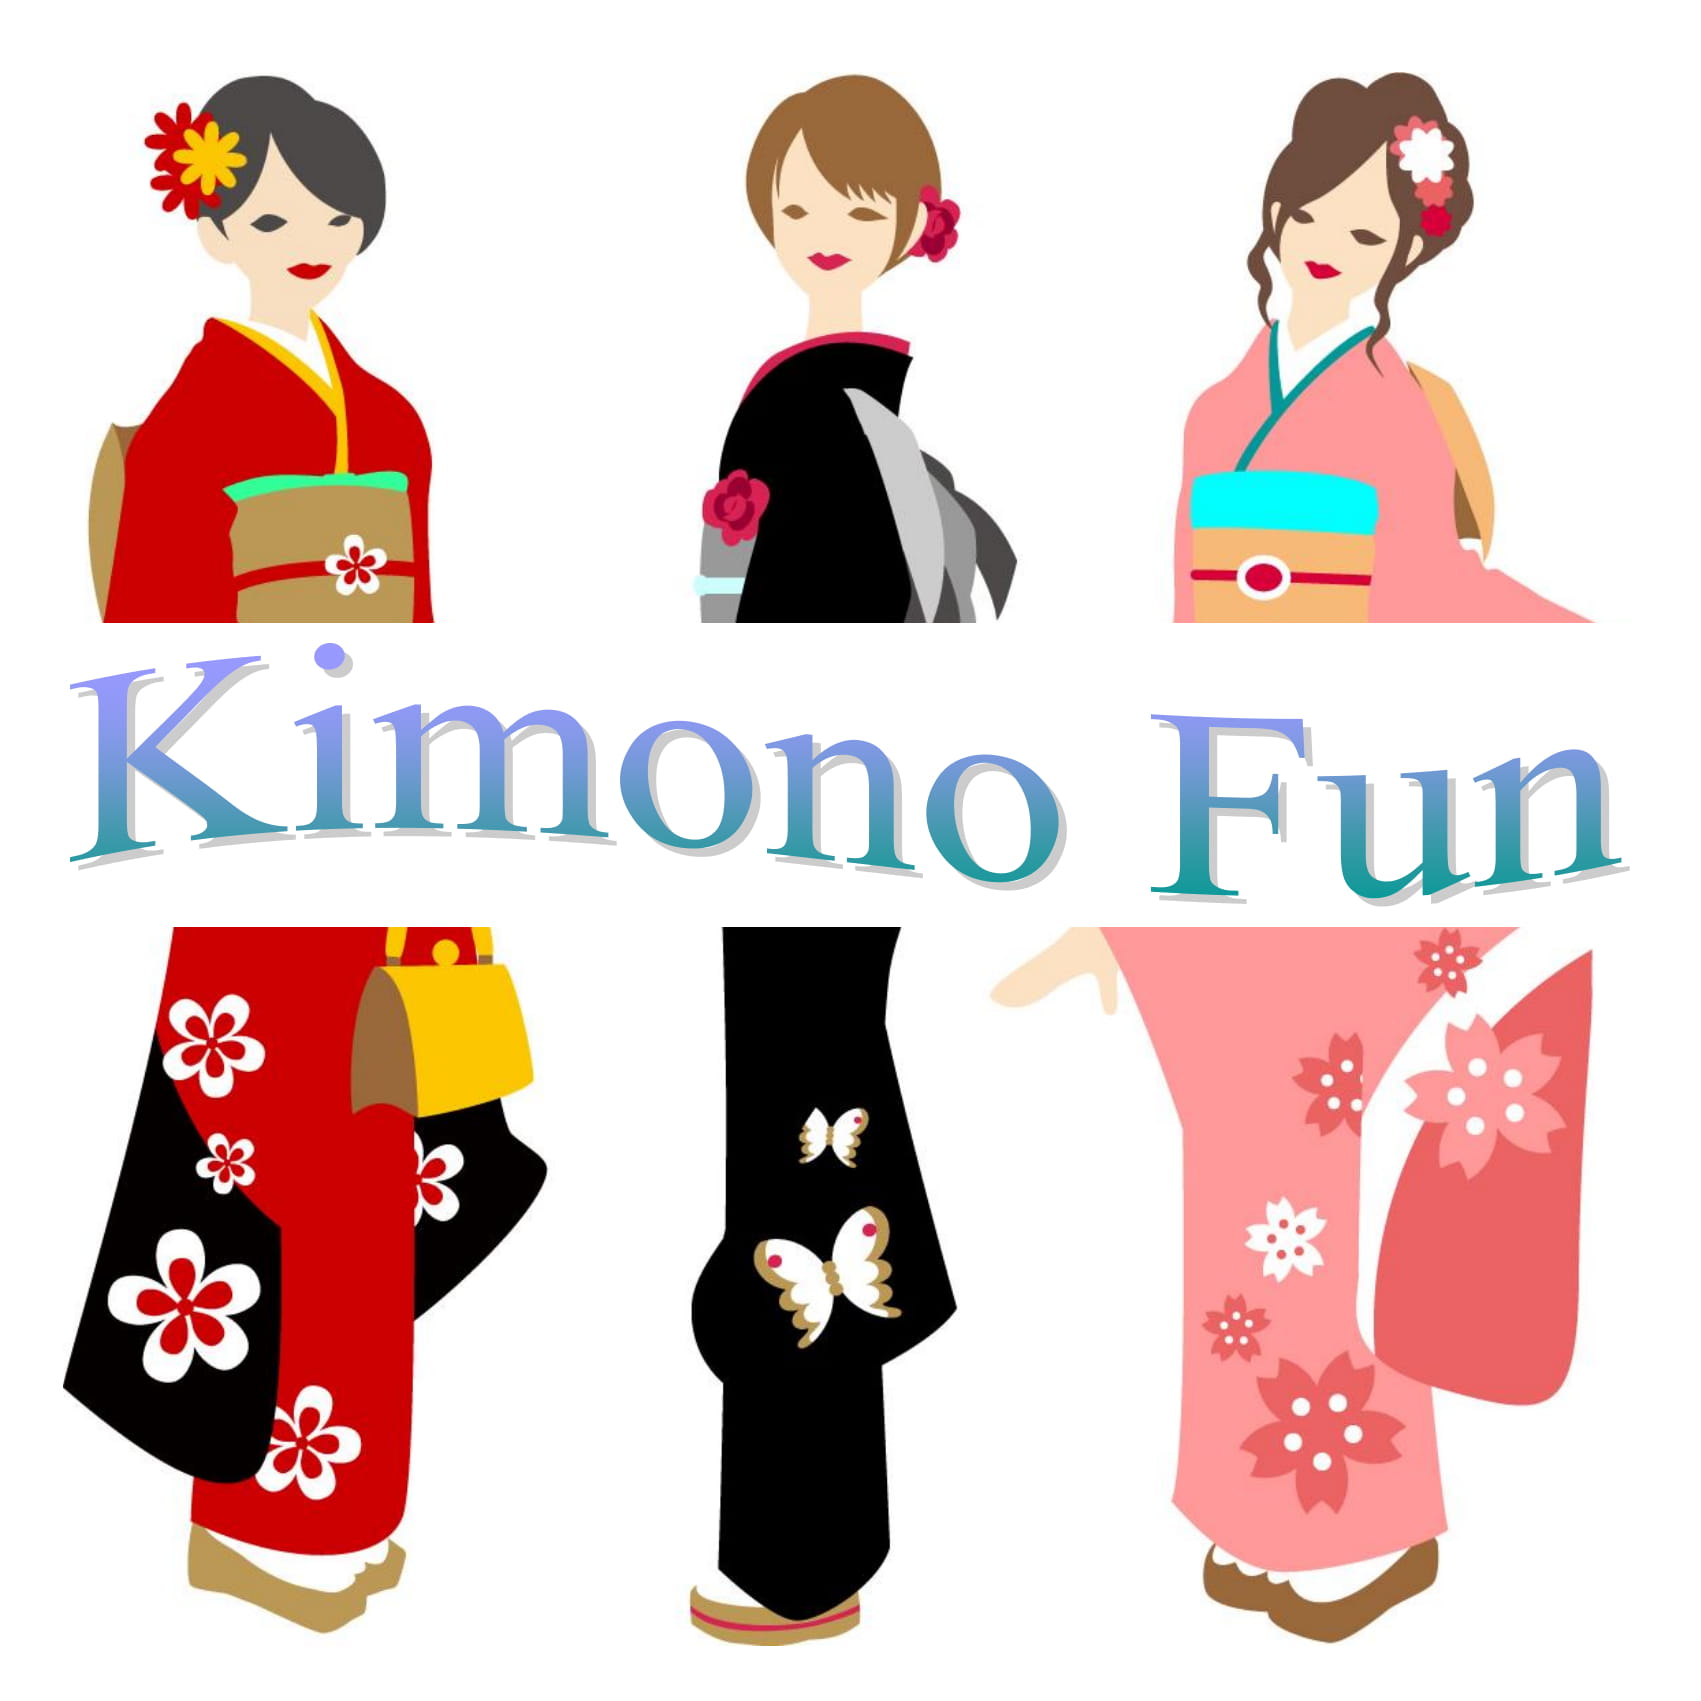 Kimono fun